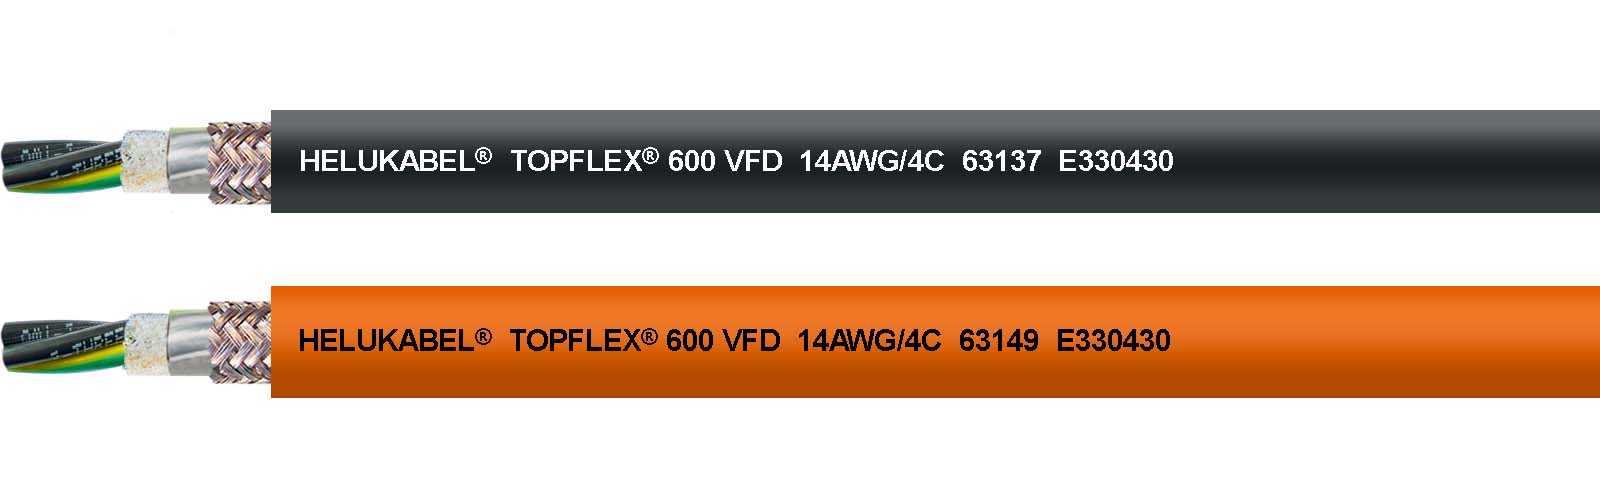 CABLES VFD - TOPFLEX®  de Helukabel